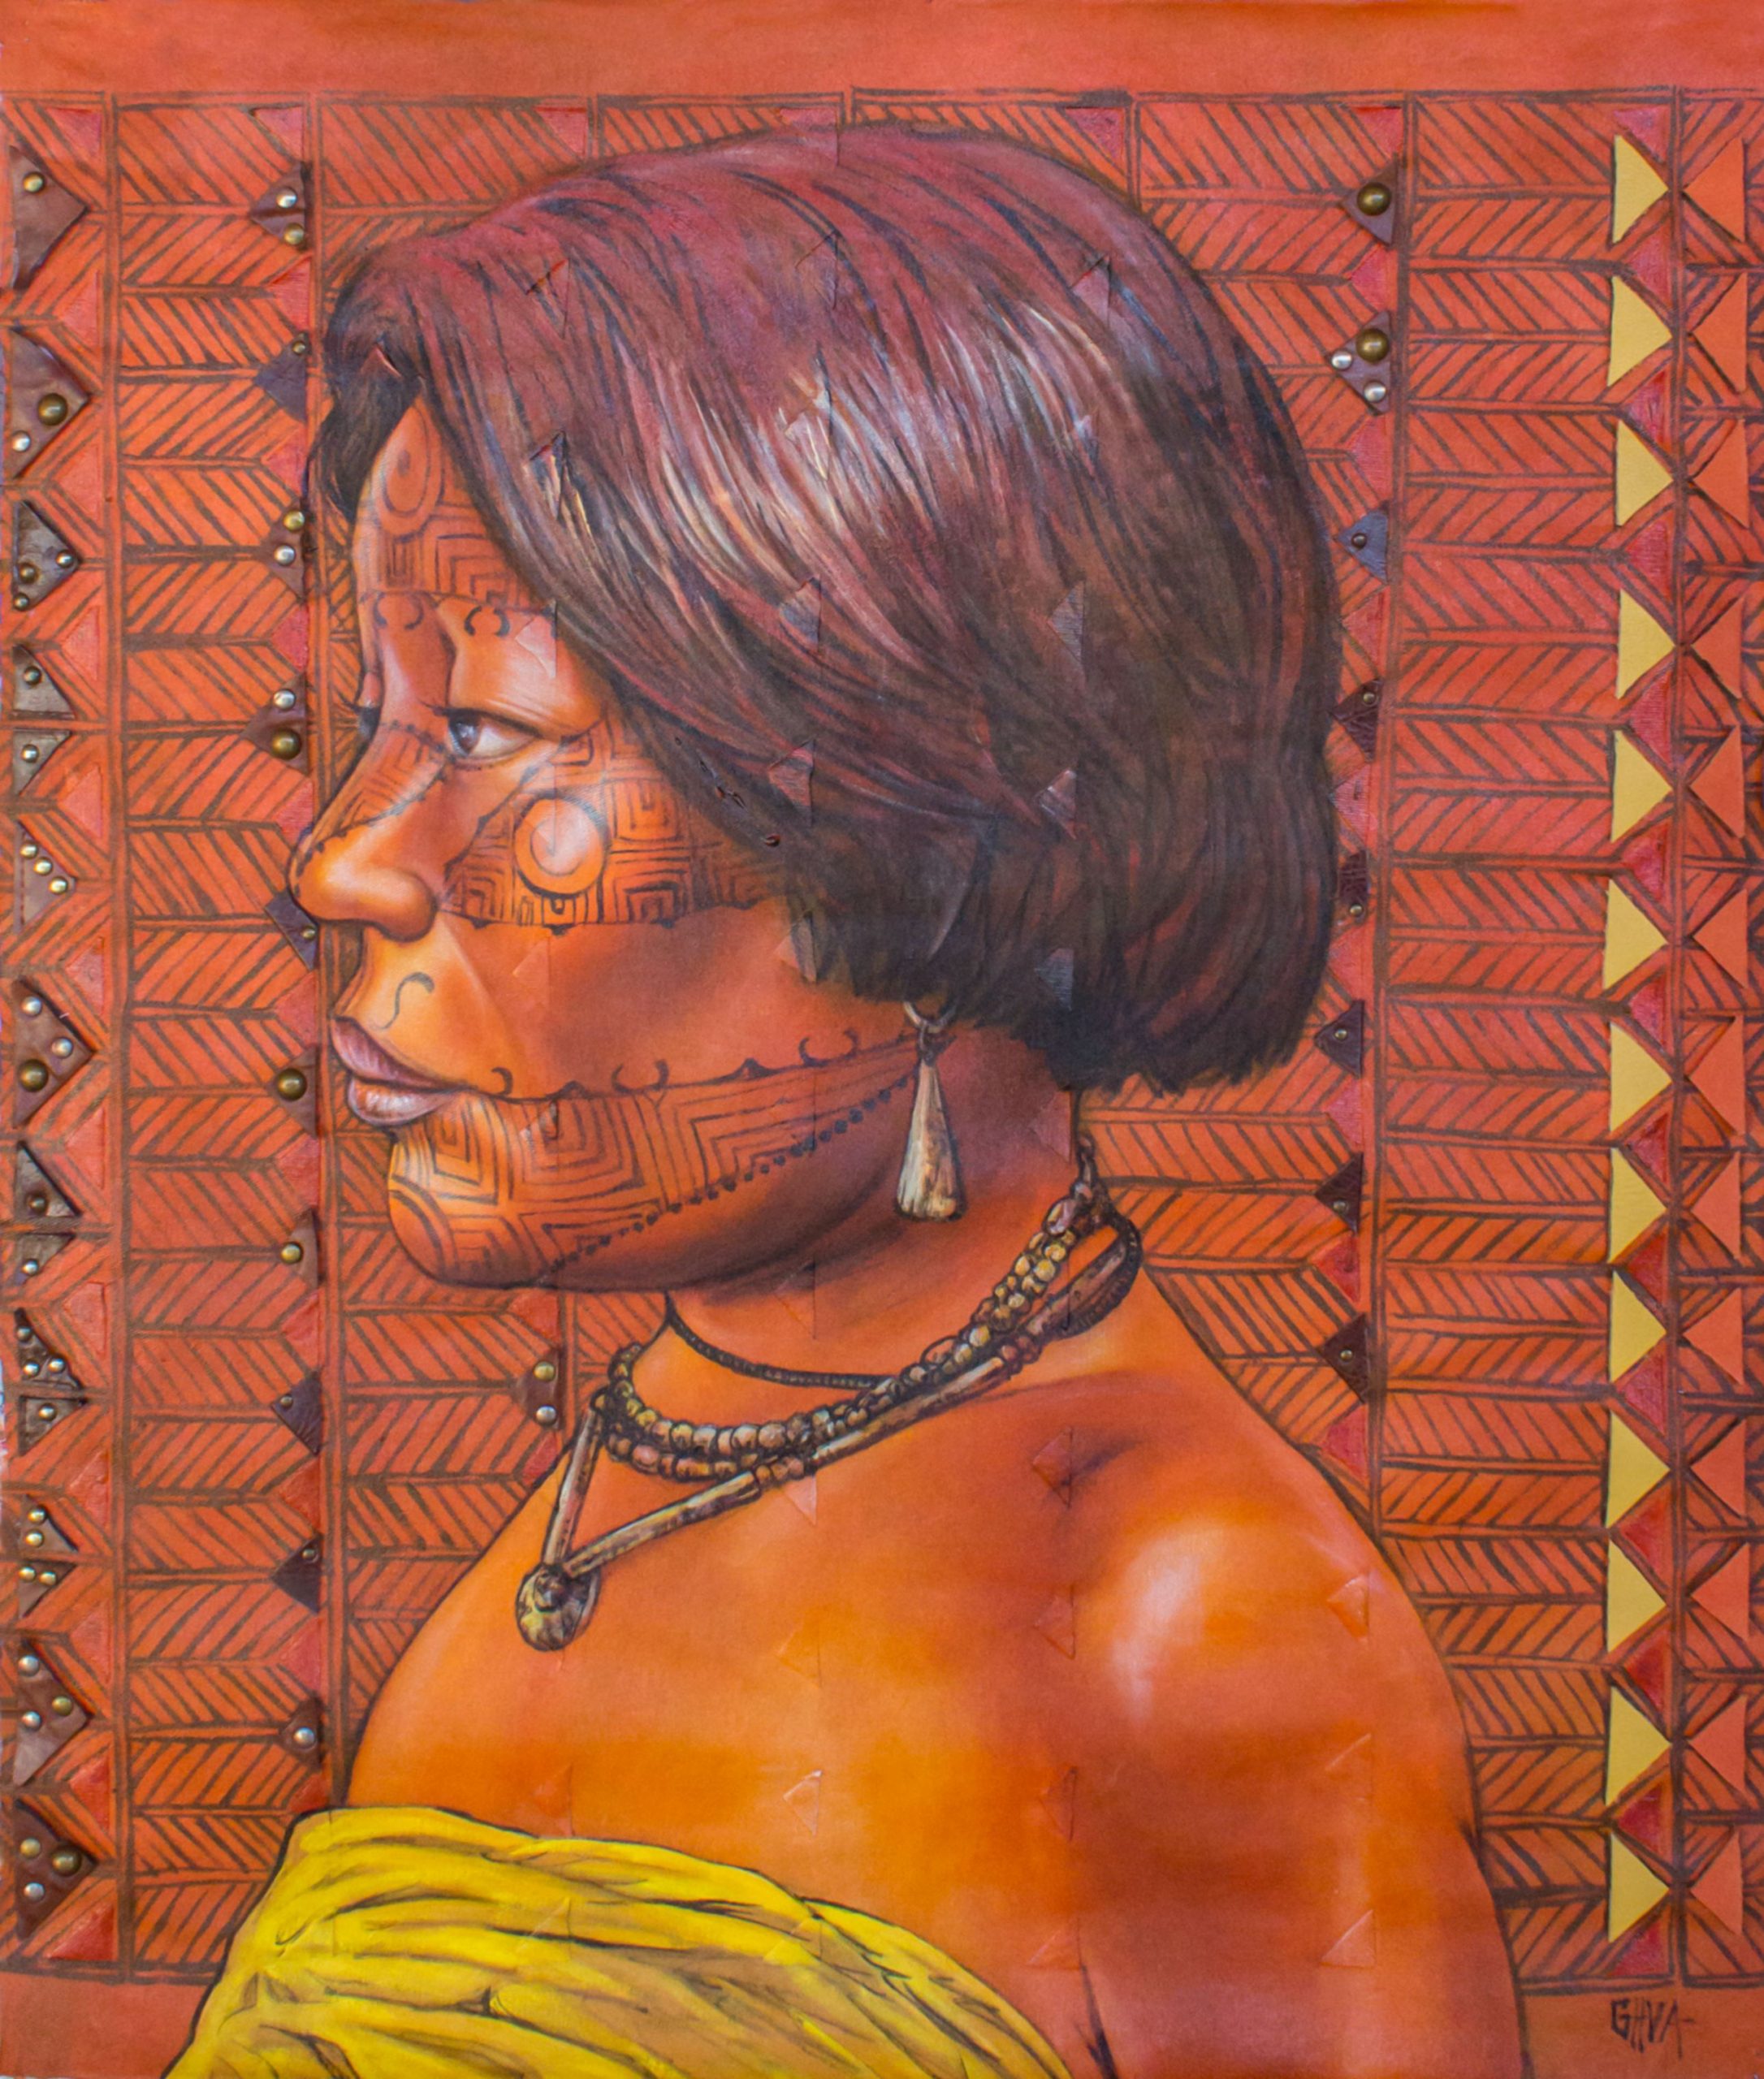  Pinturas inspiradas na cultura indígena serão apresentadas na próxima semana